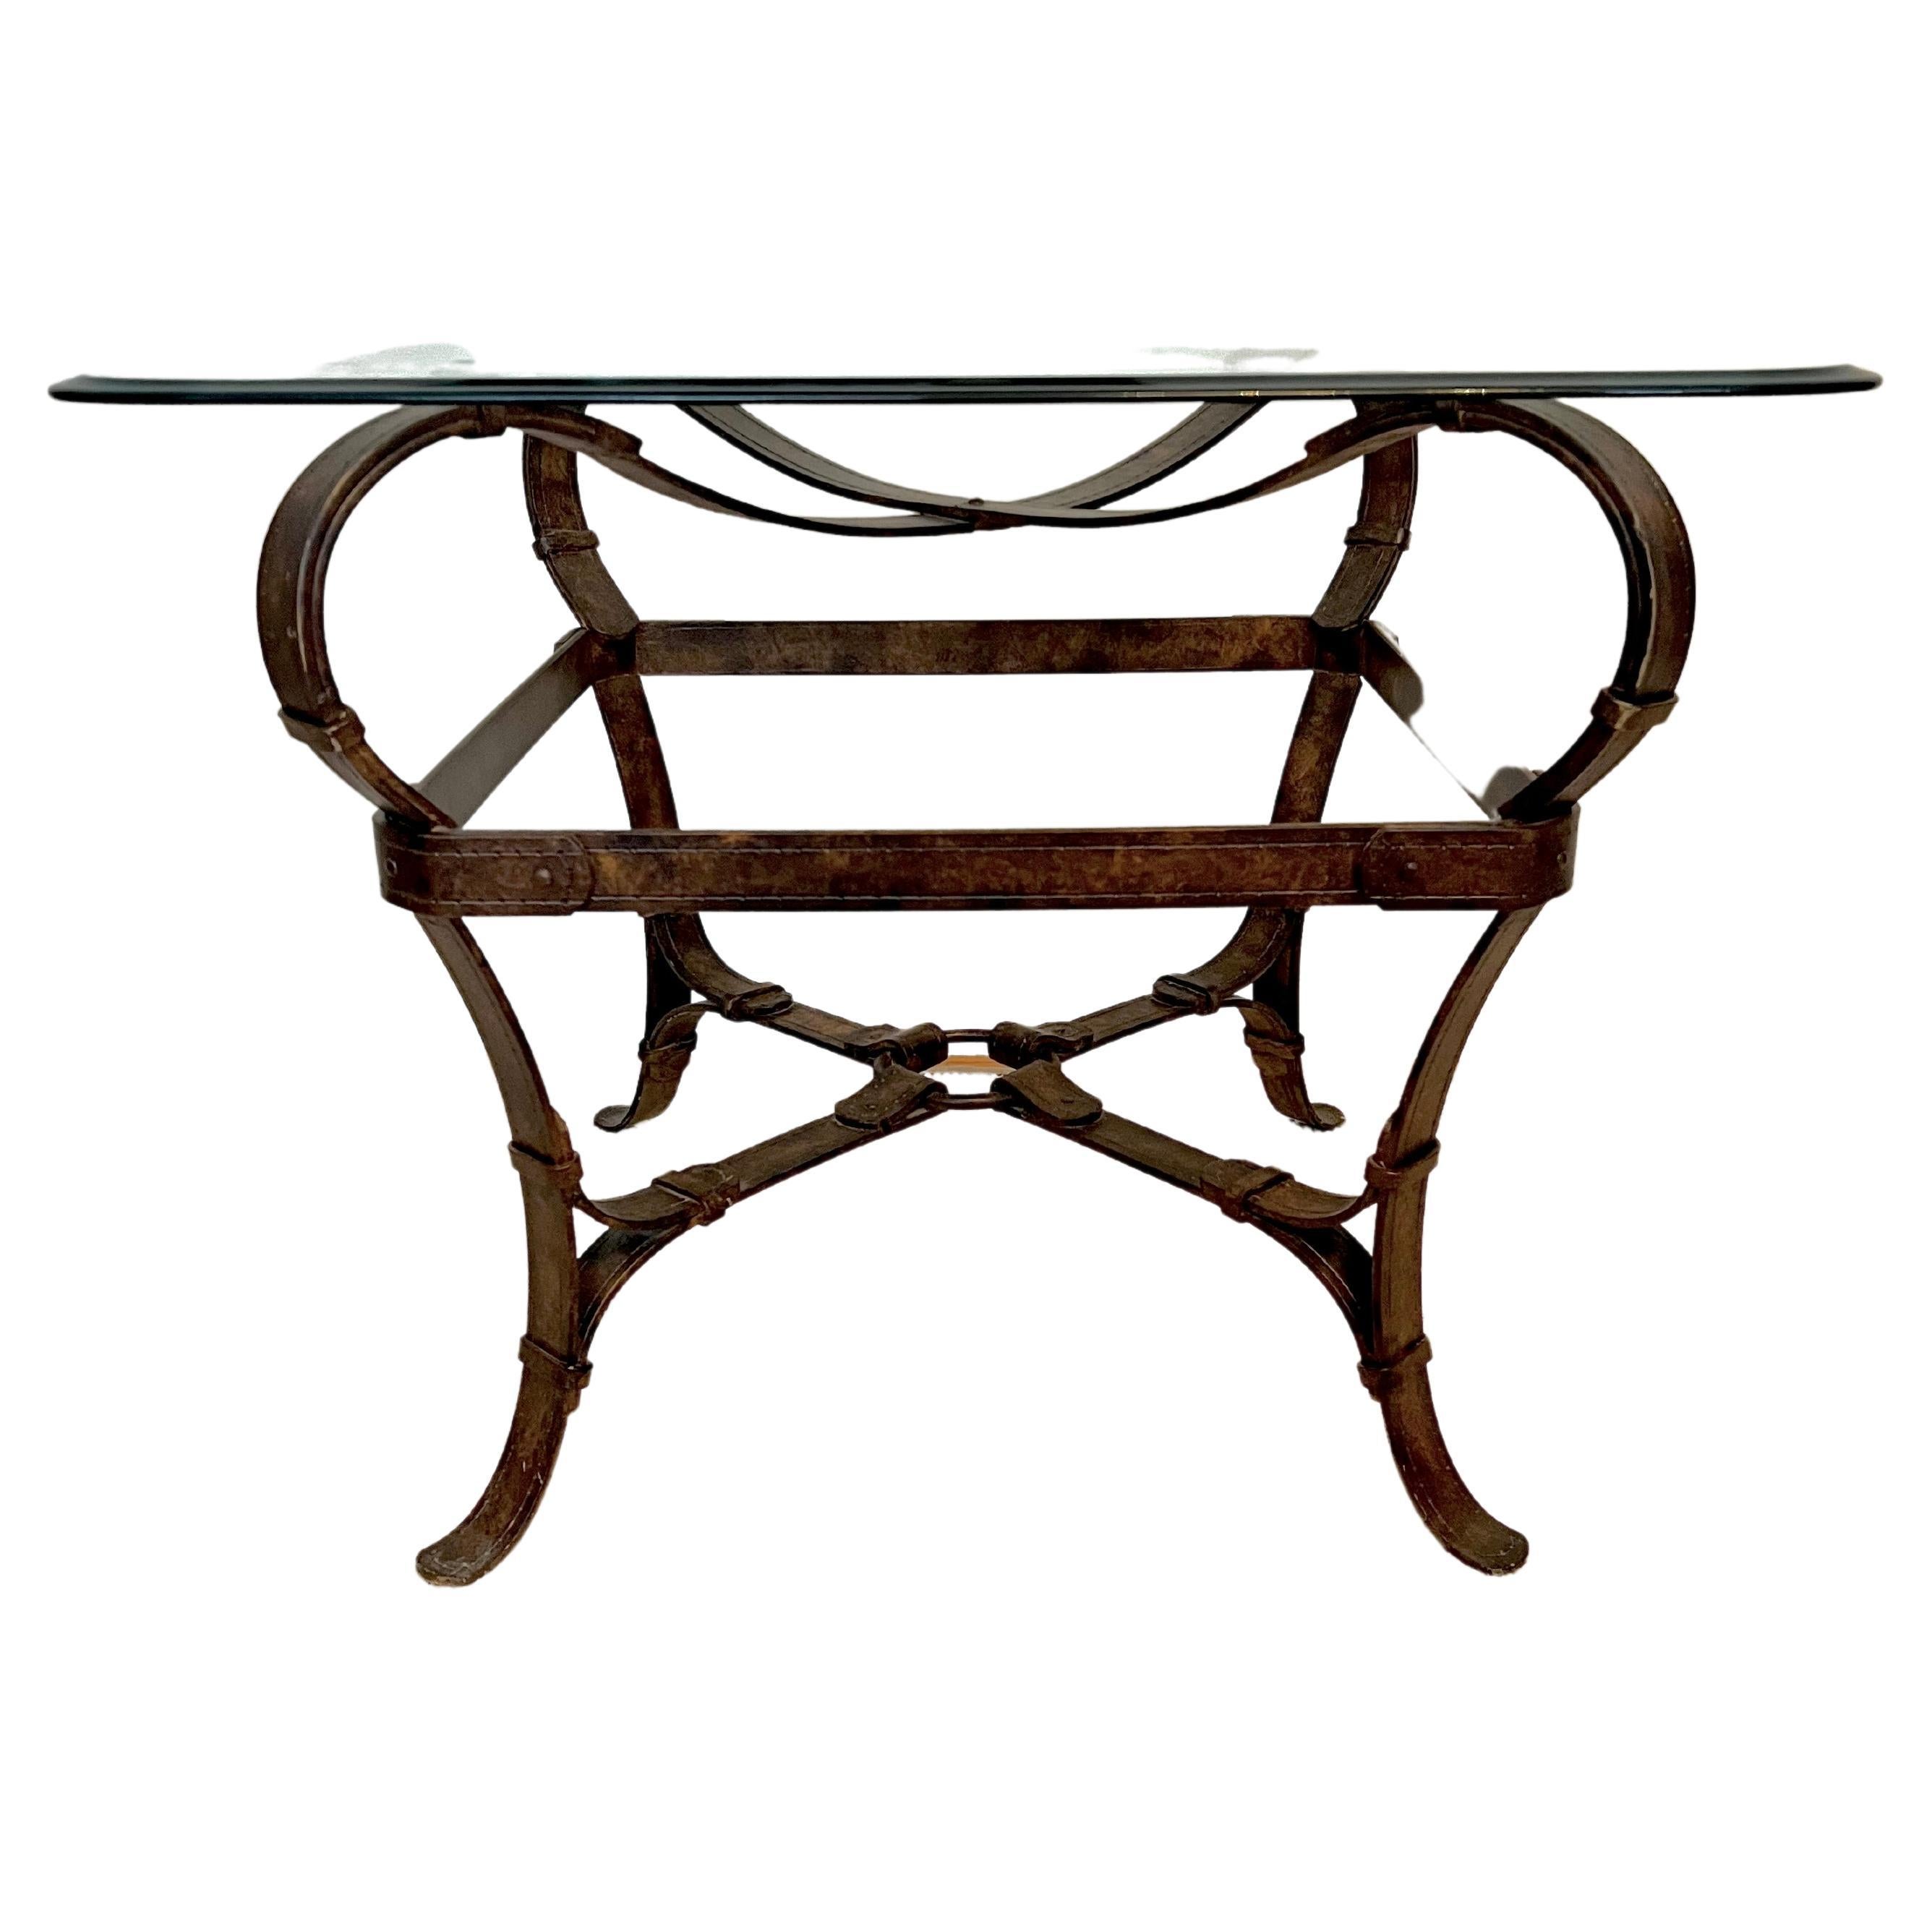 Table d'appoint de style Jaques Adnet ou Hermès en Trompe L'Oeil, lanières de cuir et métal